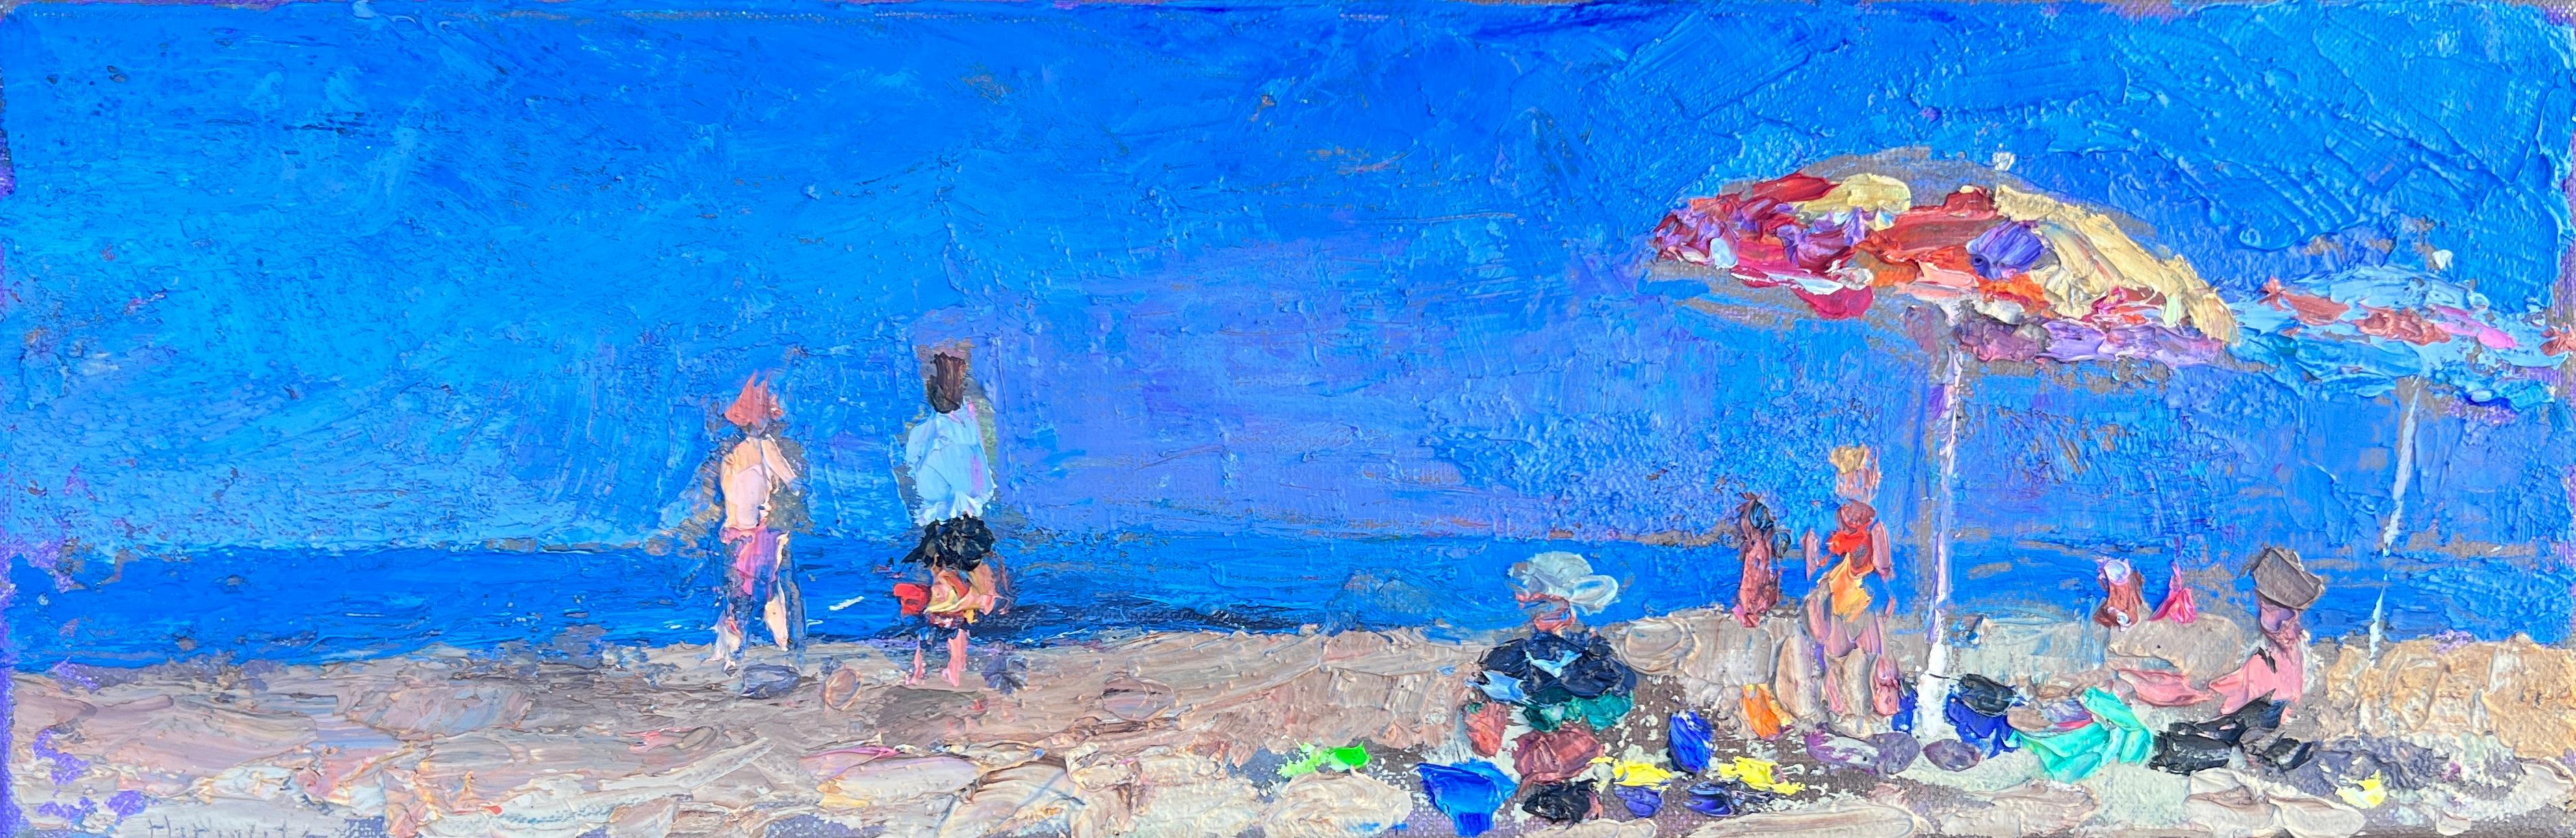 Landscape Painting Larry Horowitz - « Day Glow Light », peinture à l'huile panoramique représentant des personnes sur une plage avec un ciel bleu